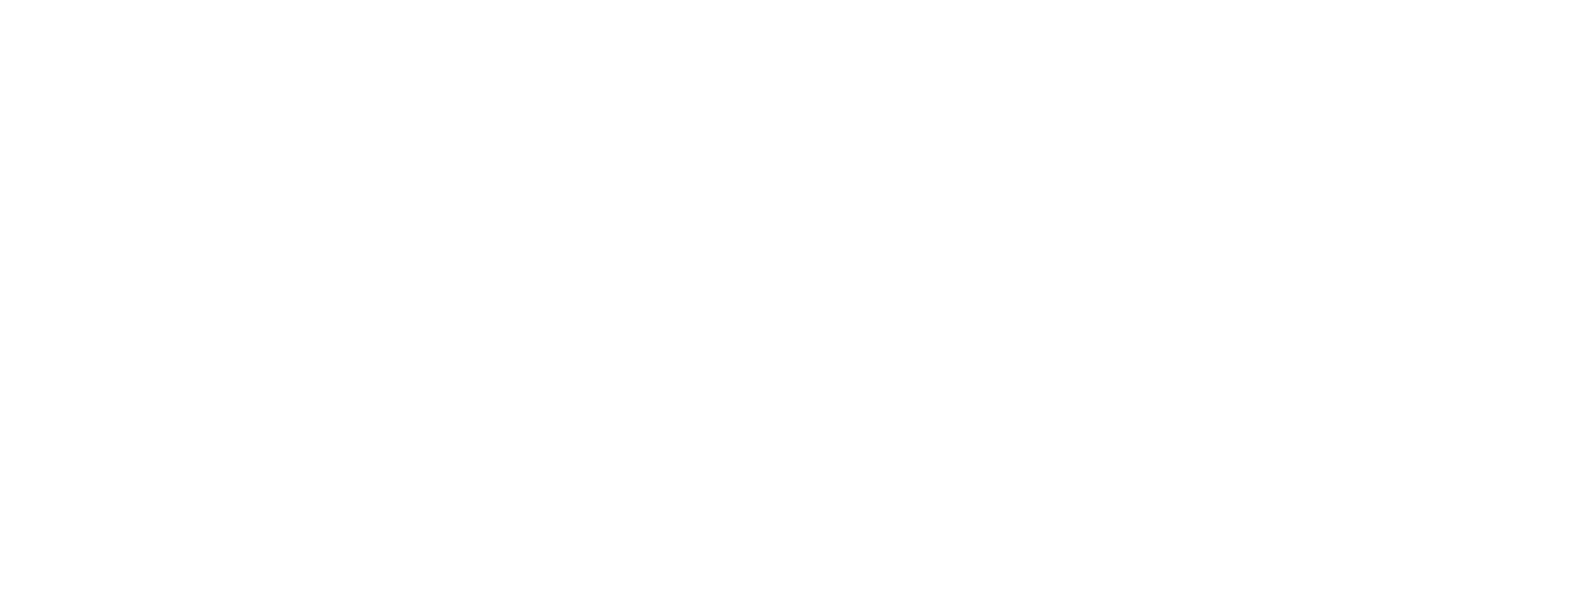 BondBloxx Logo groß für dunkle Hintergründe (transparentes PNG)